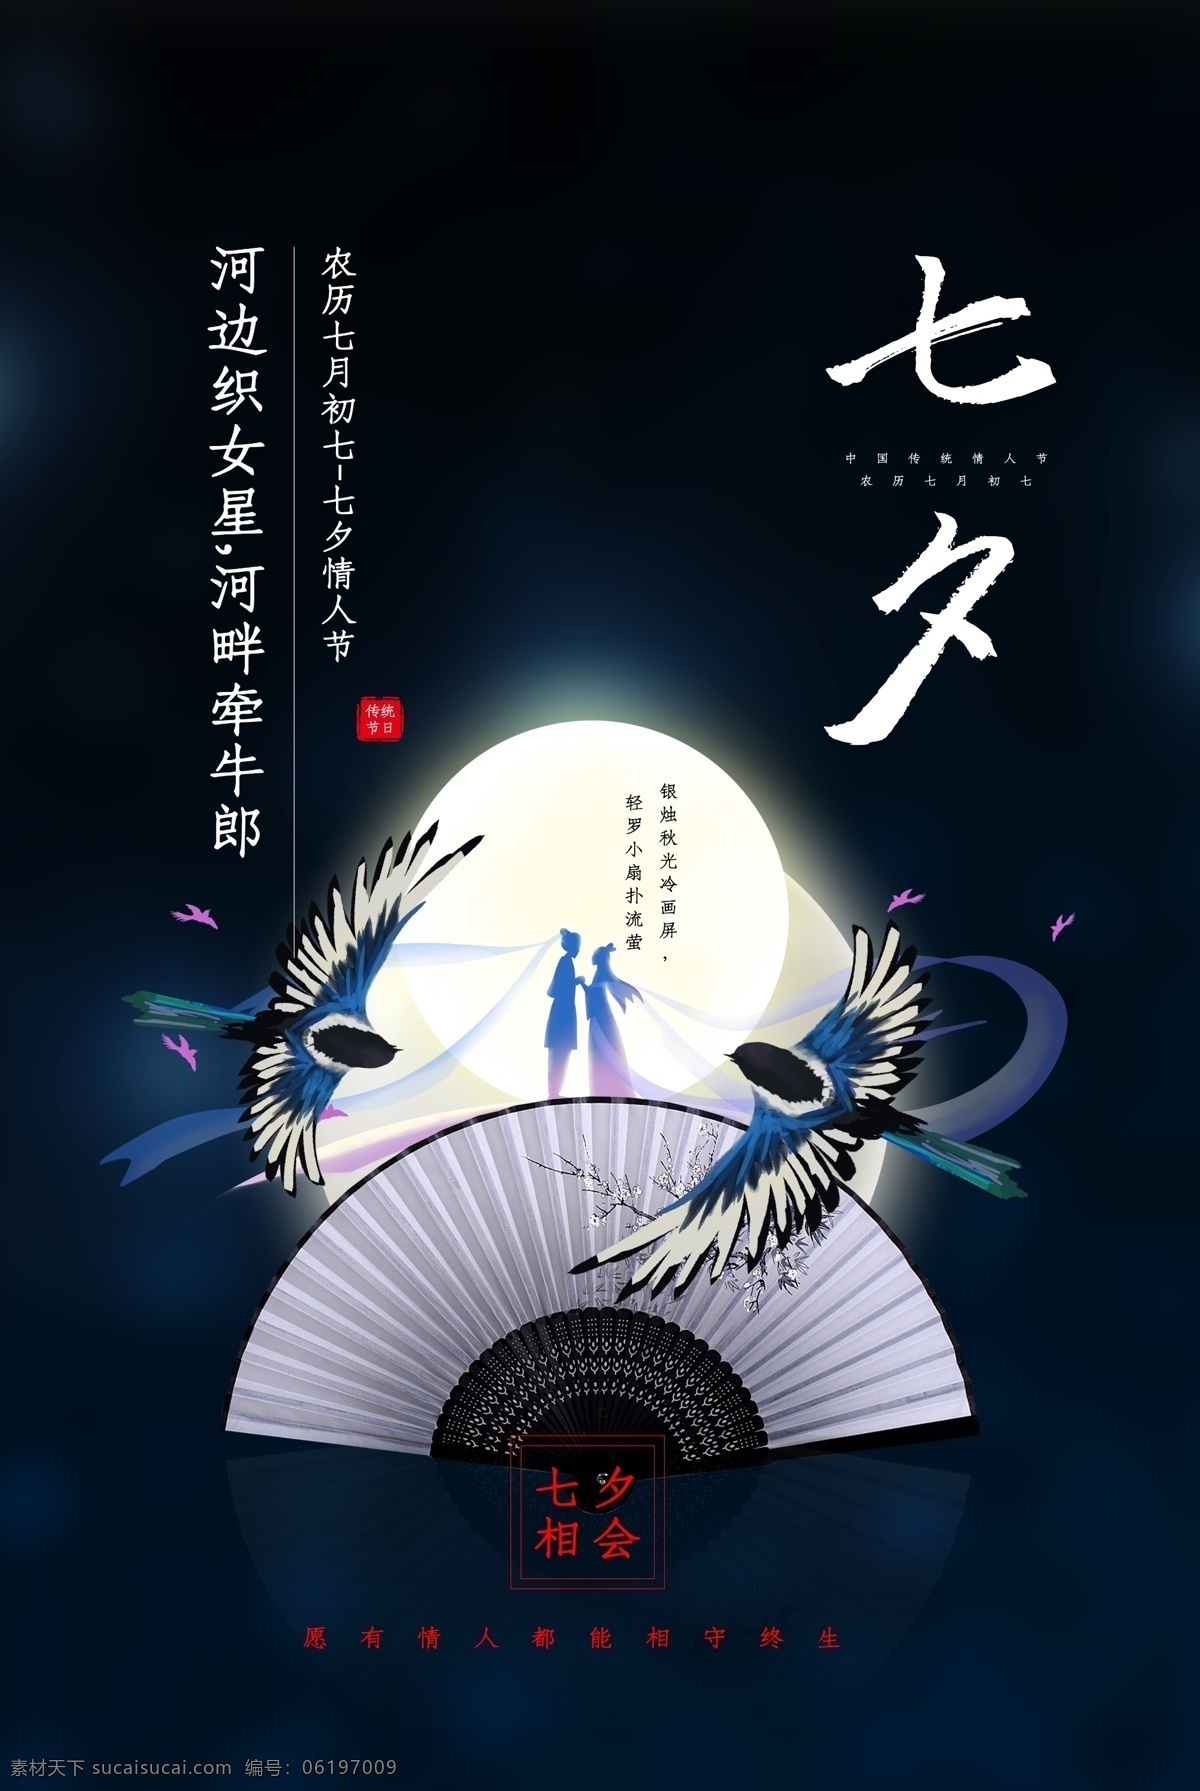 七夕 传统节日 活动 促销 海报 传统 节日